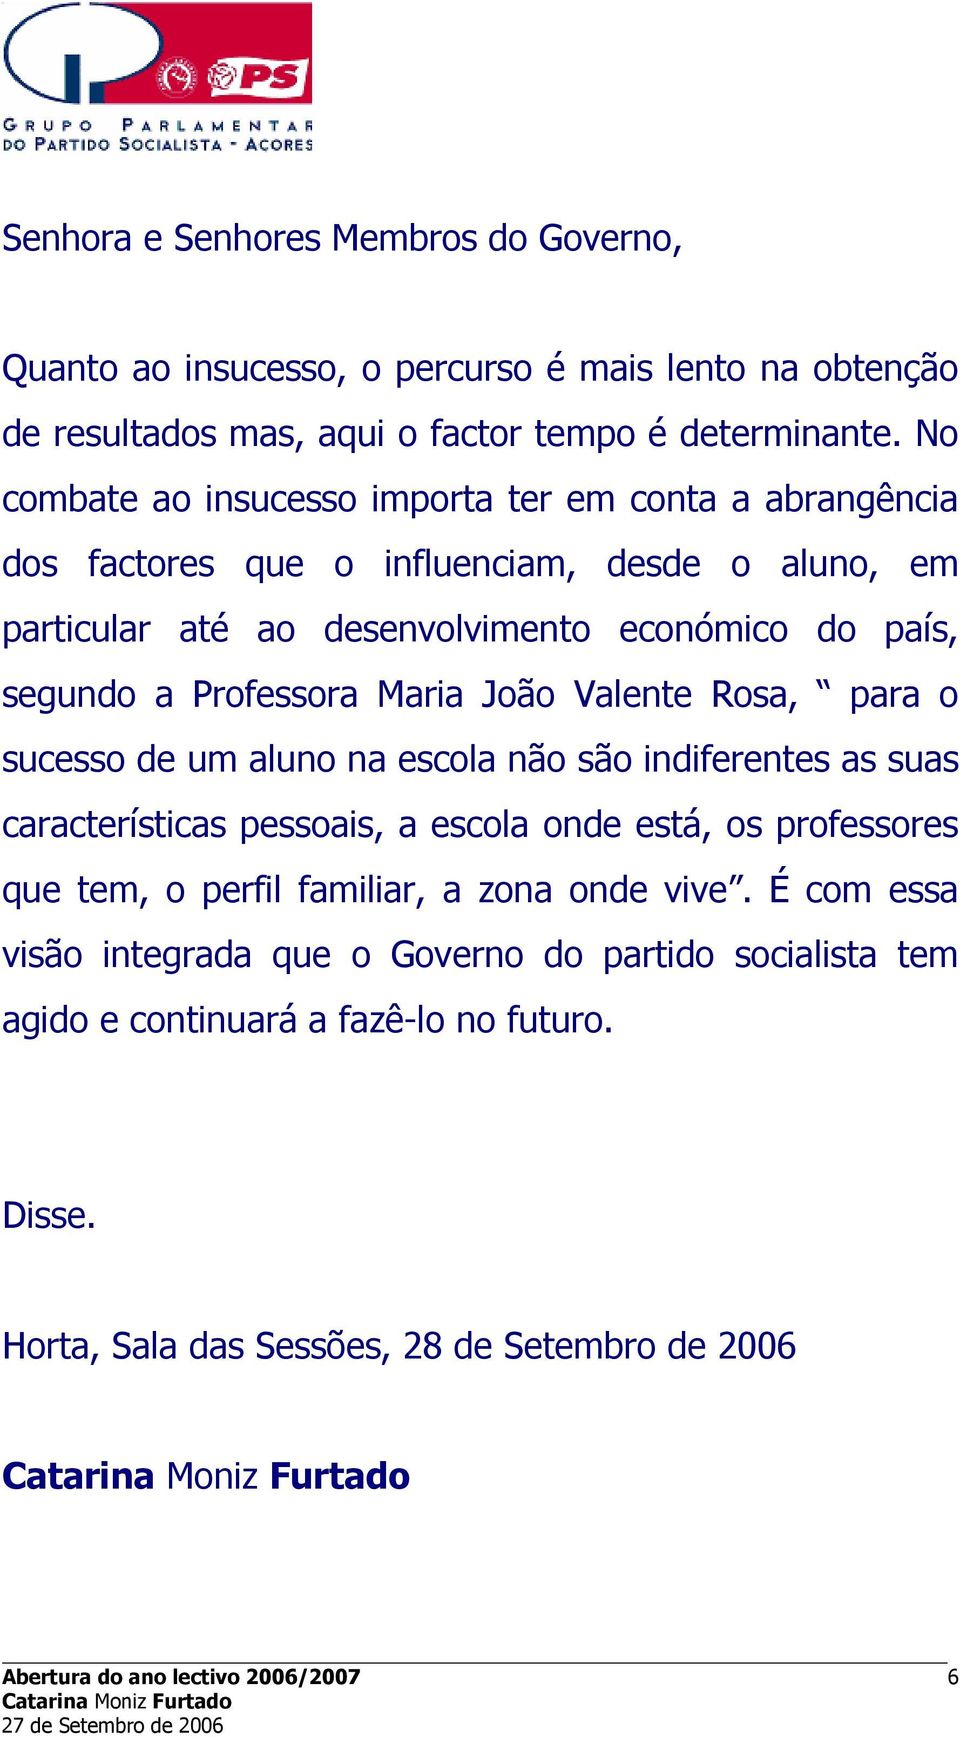 Maria João Valente Rosa, para o sucesso de um aluno na escola não são indiferentes as suas características pessoais, a escola onde está, os professores que tem, o perfil familiar, a